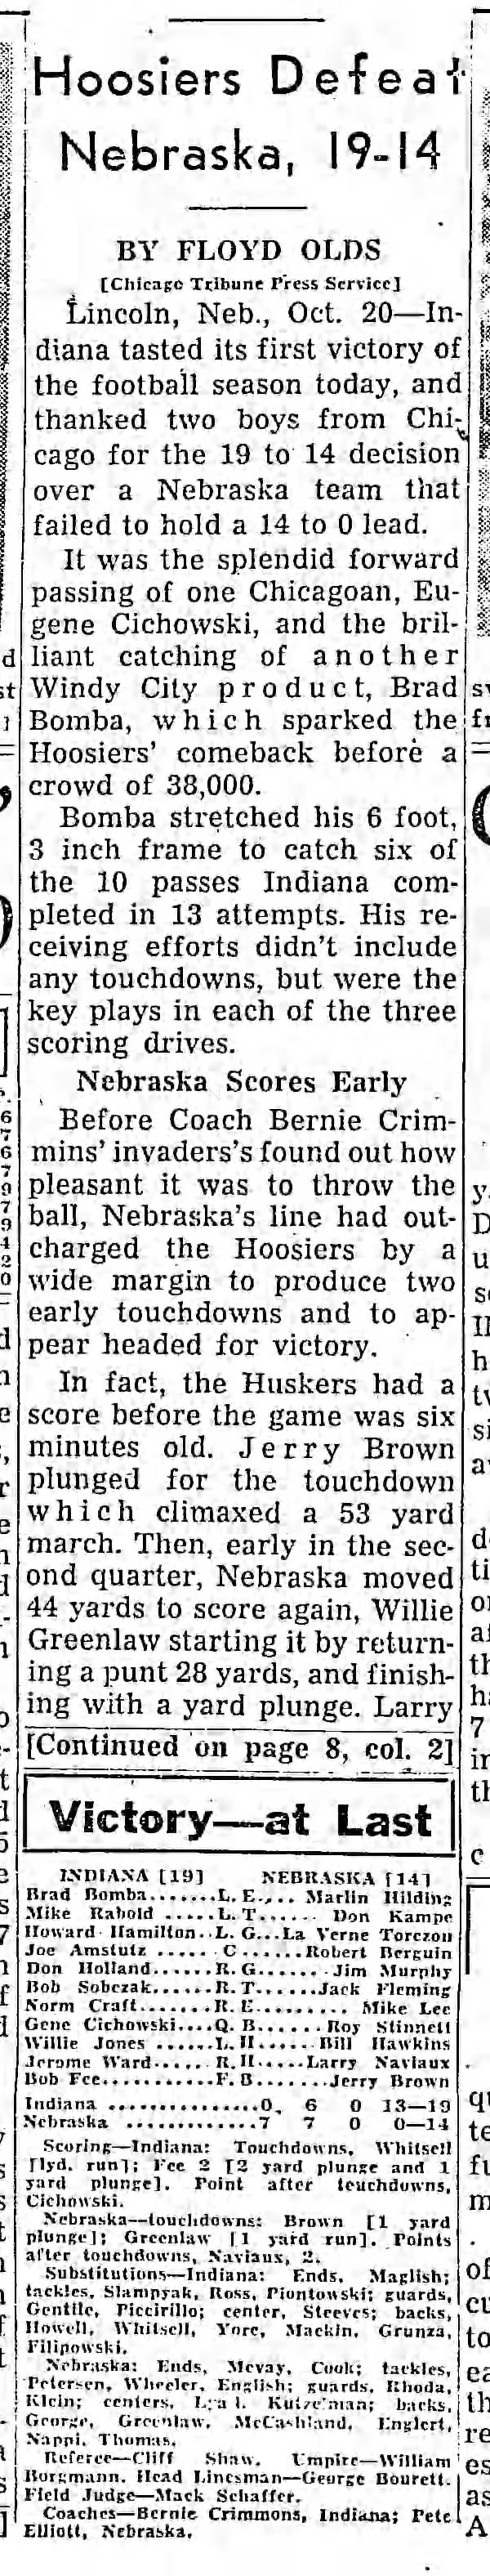 Indiana Wins: Hoosiers Defeat Nebraska, 19-14